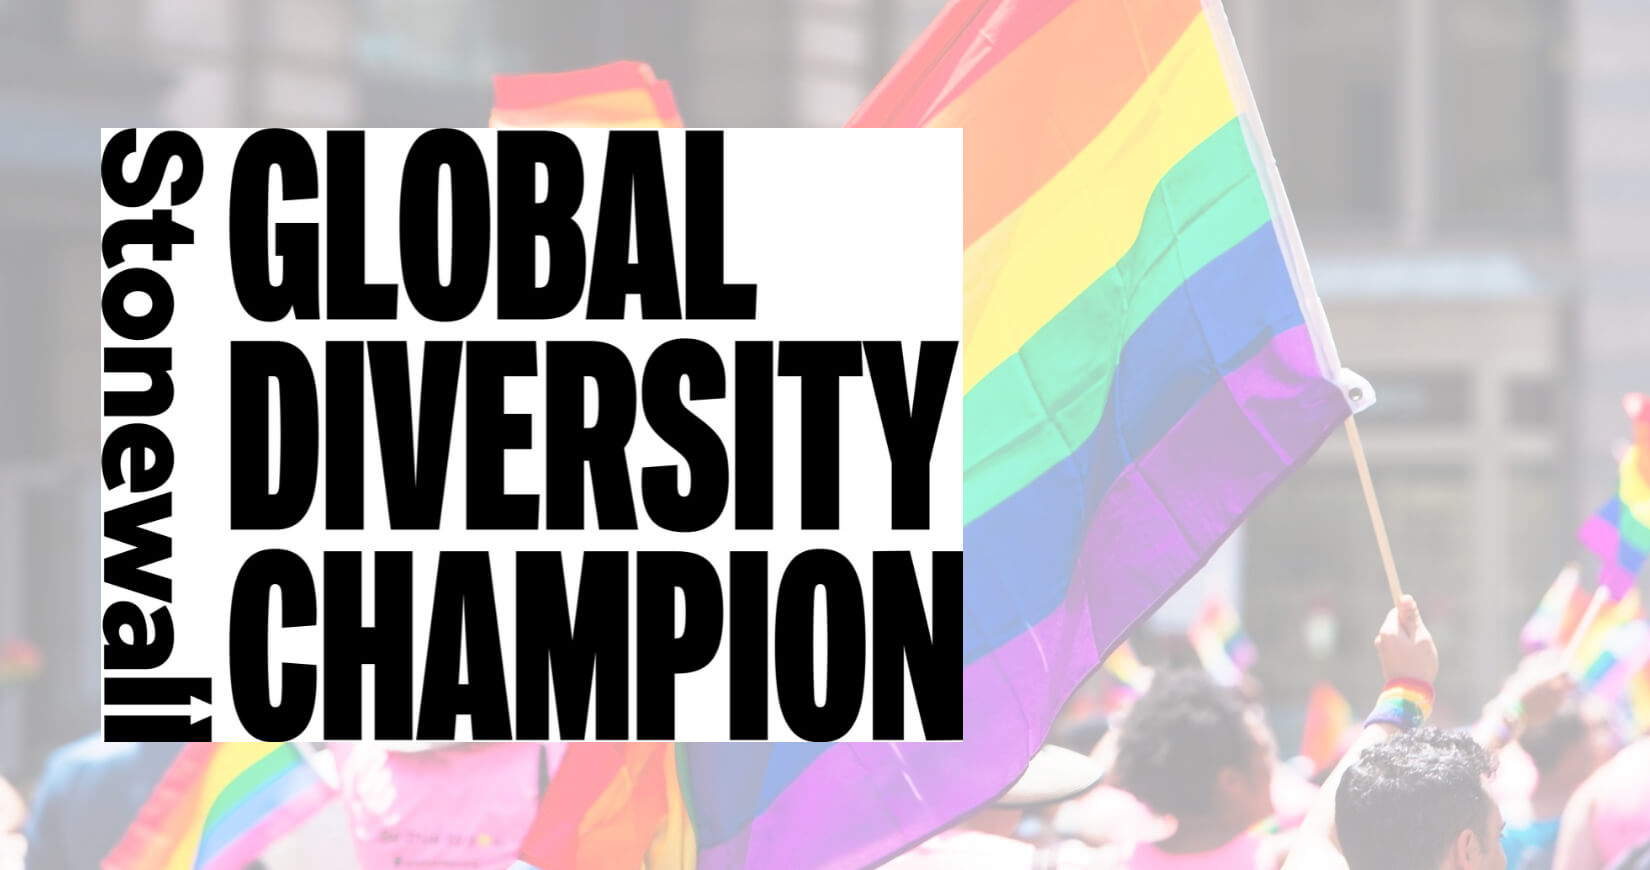 11 of 15 logos - Stonewall Diversity